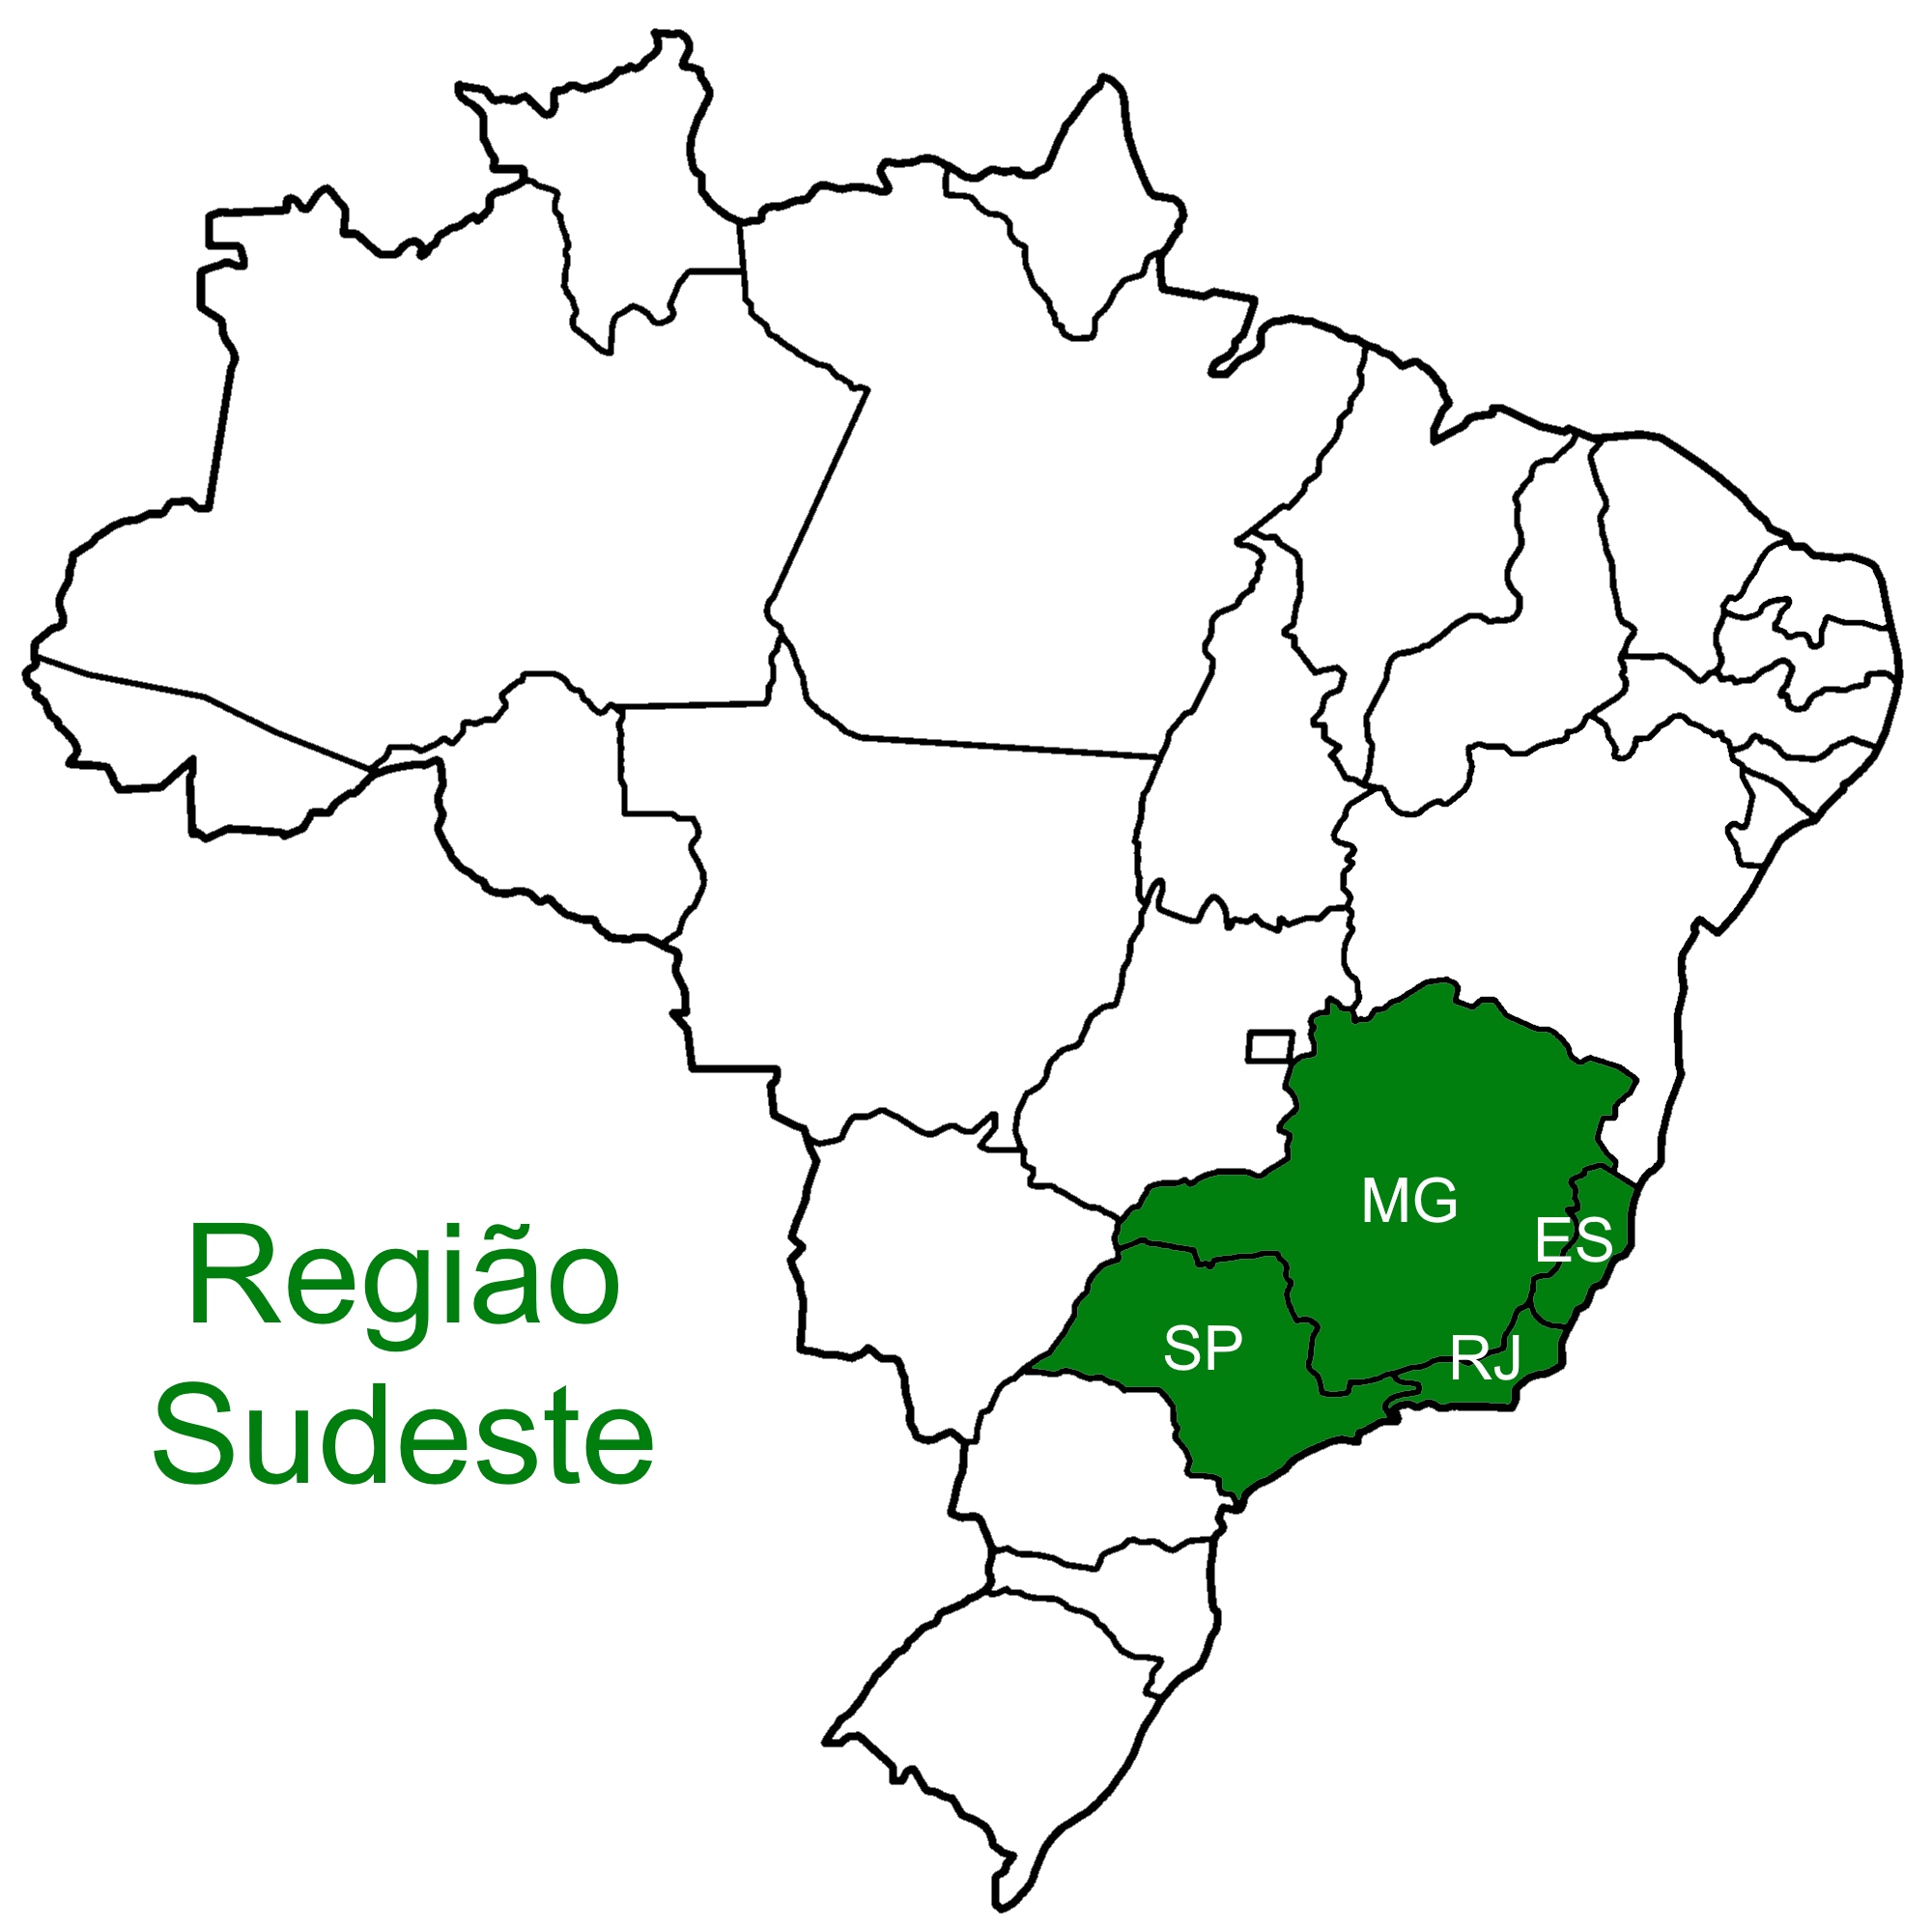 Mapa da região sudeste do Brasil.